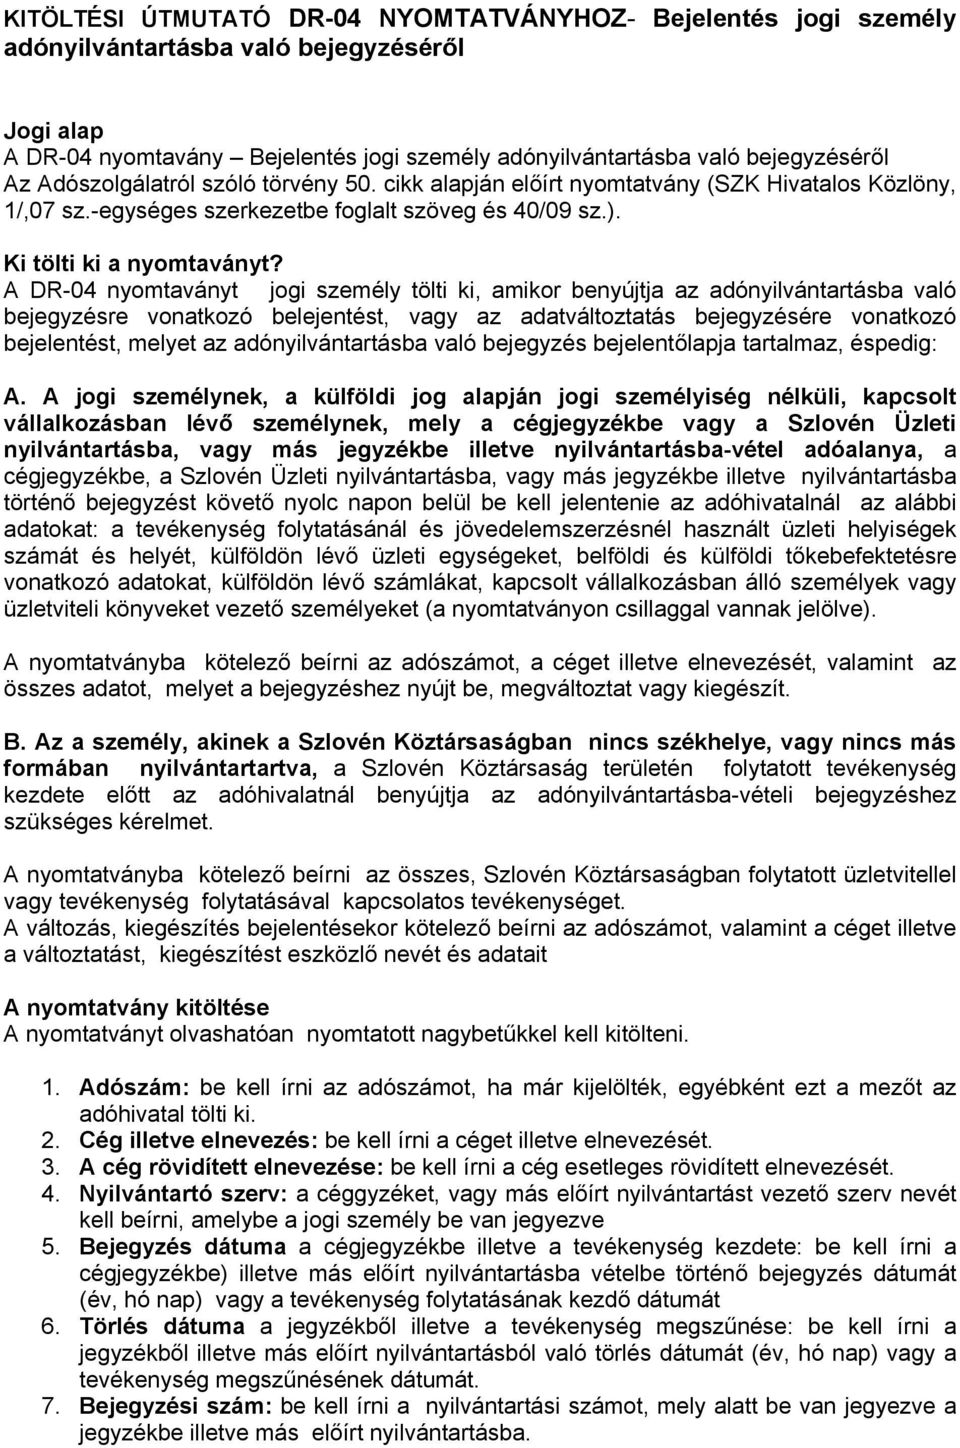 DR-04 NYOMTATVÁNY Bejelentés jogi személy adónyilvántartásba való  bejegyzéséről - PDF Ingyenes letöltés